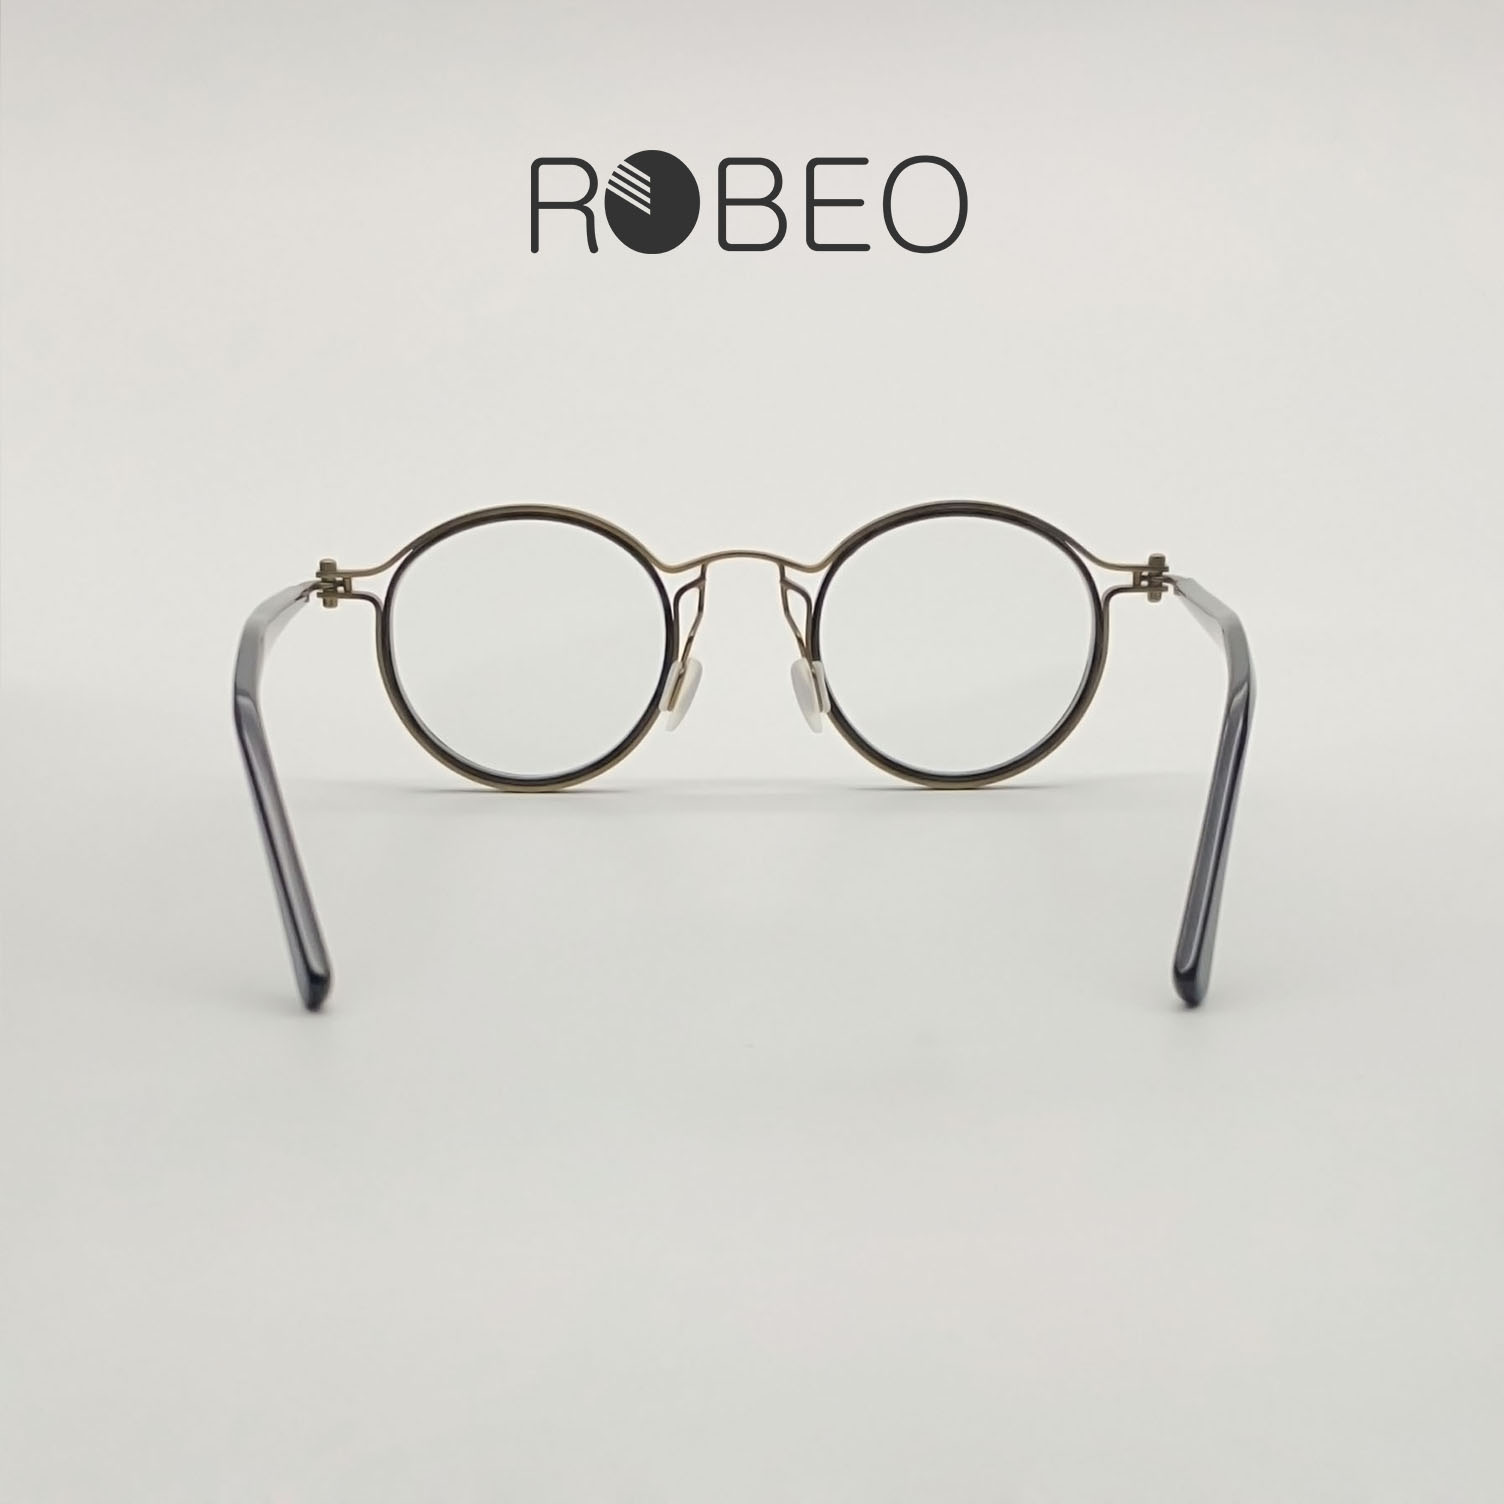 Gọng kính cận nam nữ ROBEO R0425 (vàng đồng), dáng tròn cổ điển mắt chống ánh sáng xanh - Fullbox